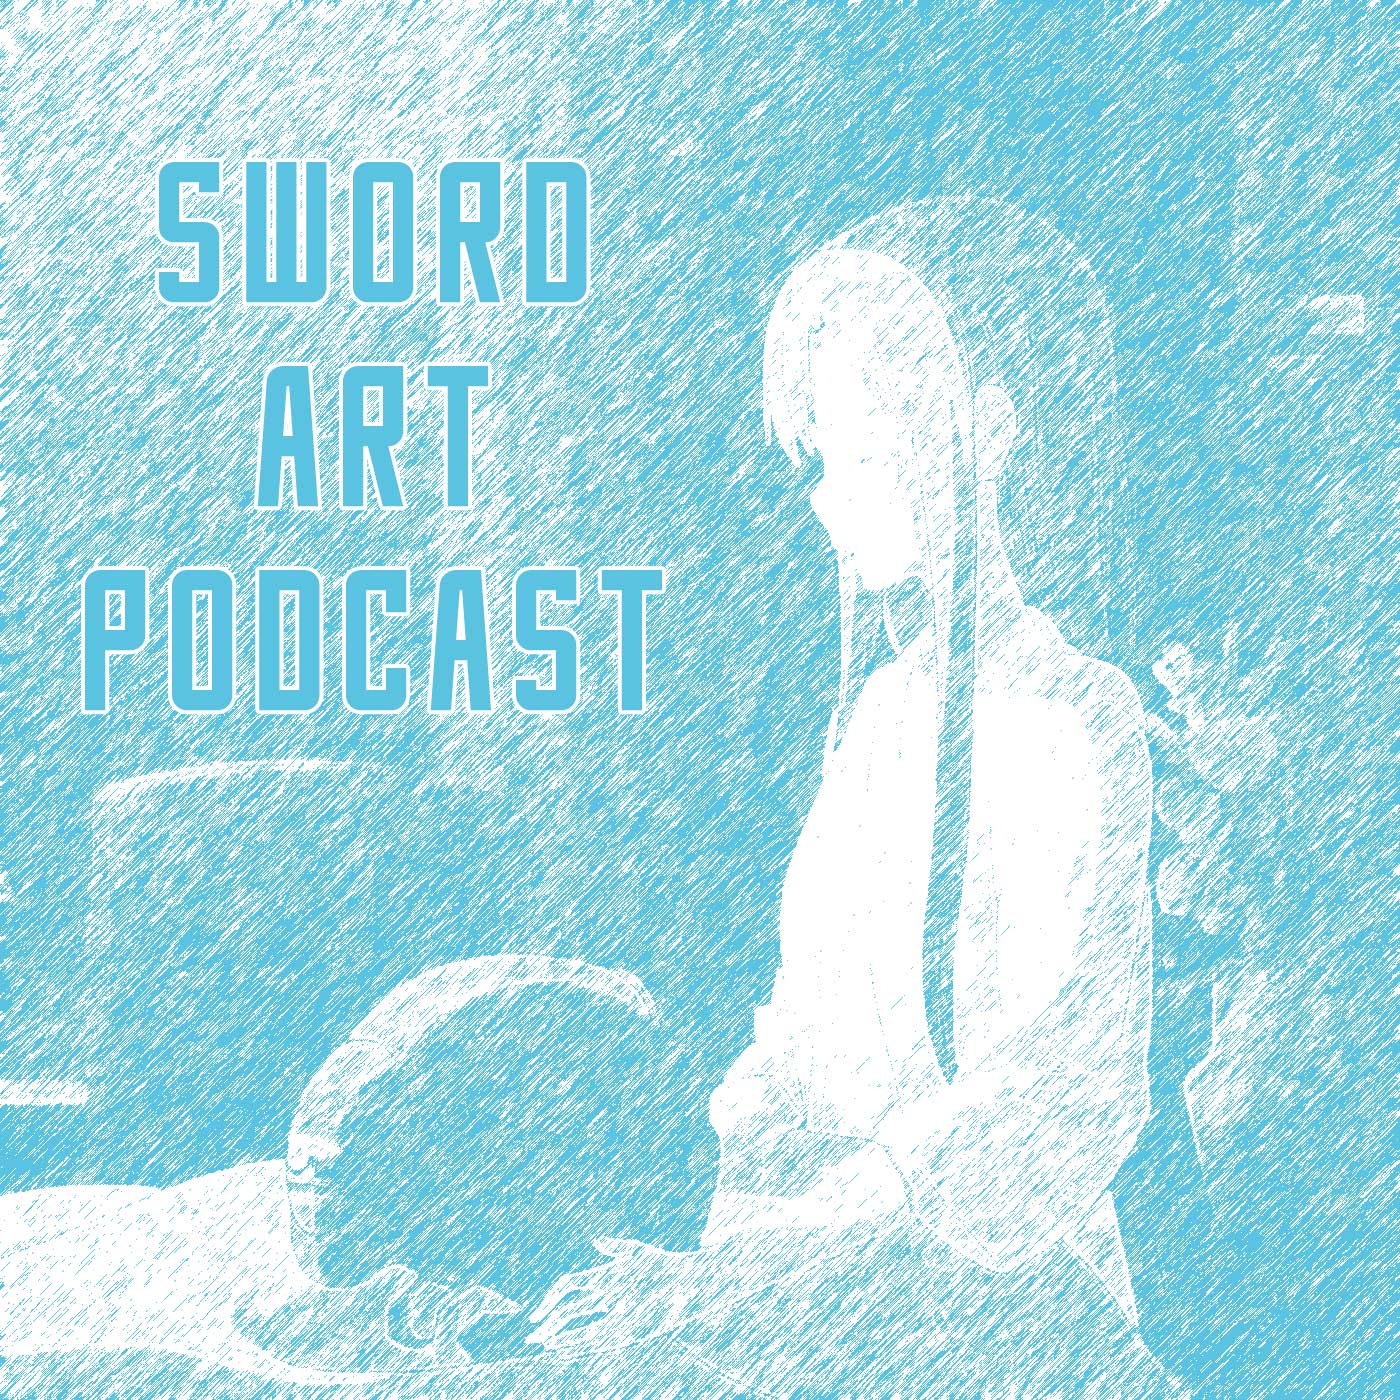 Sword Art Podcast - Season 5 - Epsiode 1